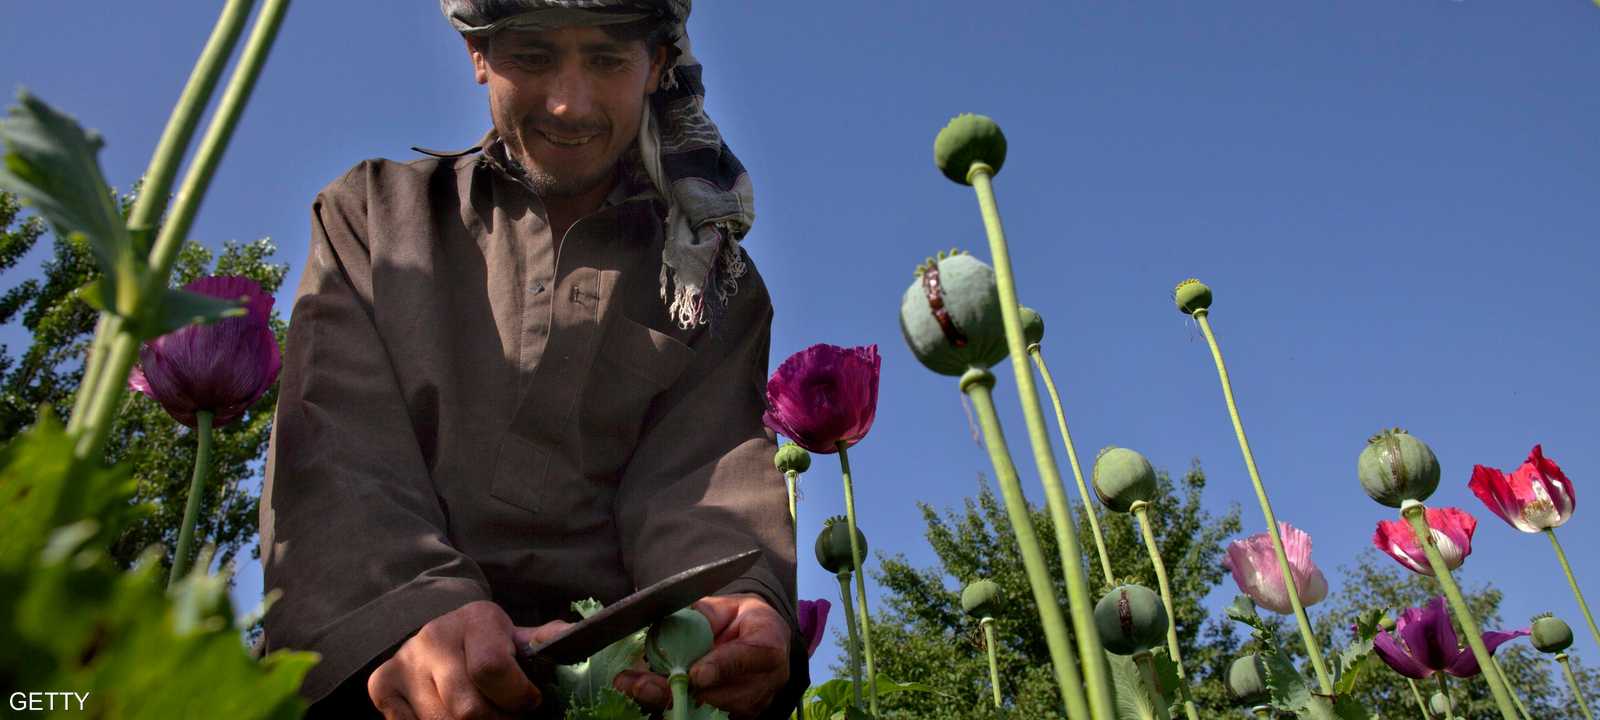 الأفيون يمثل دخلا مهما لأفغانستان الفقيرة